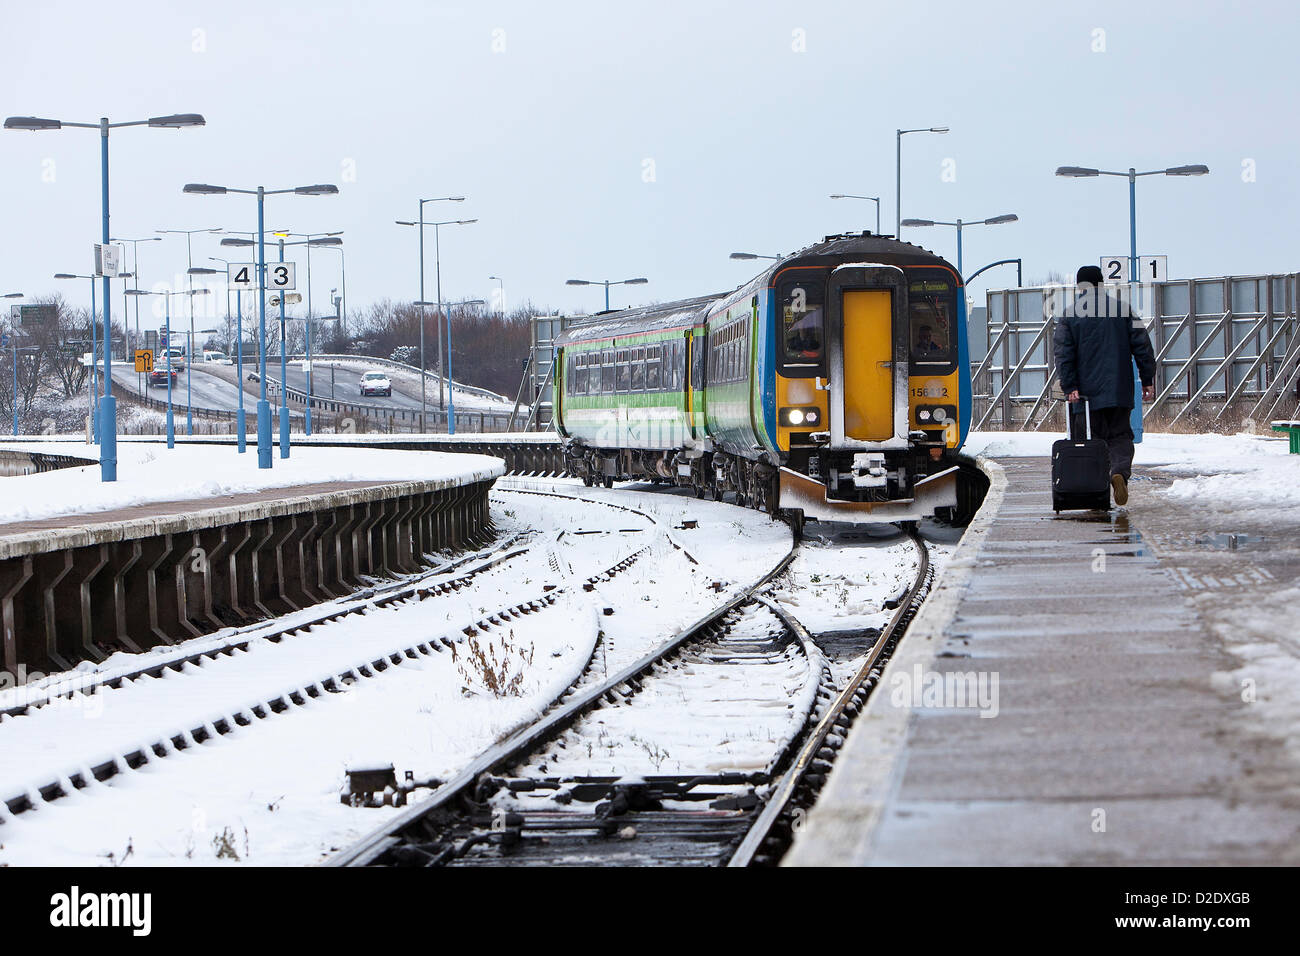 Great Yarmouth, au Royaume-Uni. Jan 21, 2013. En hiver, le train tire la station de Vauxhall à Great Yarmouth. Banque D'Images